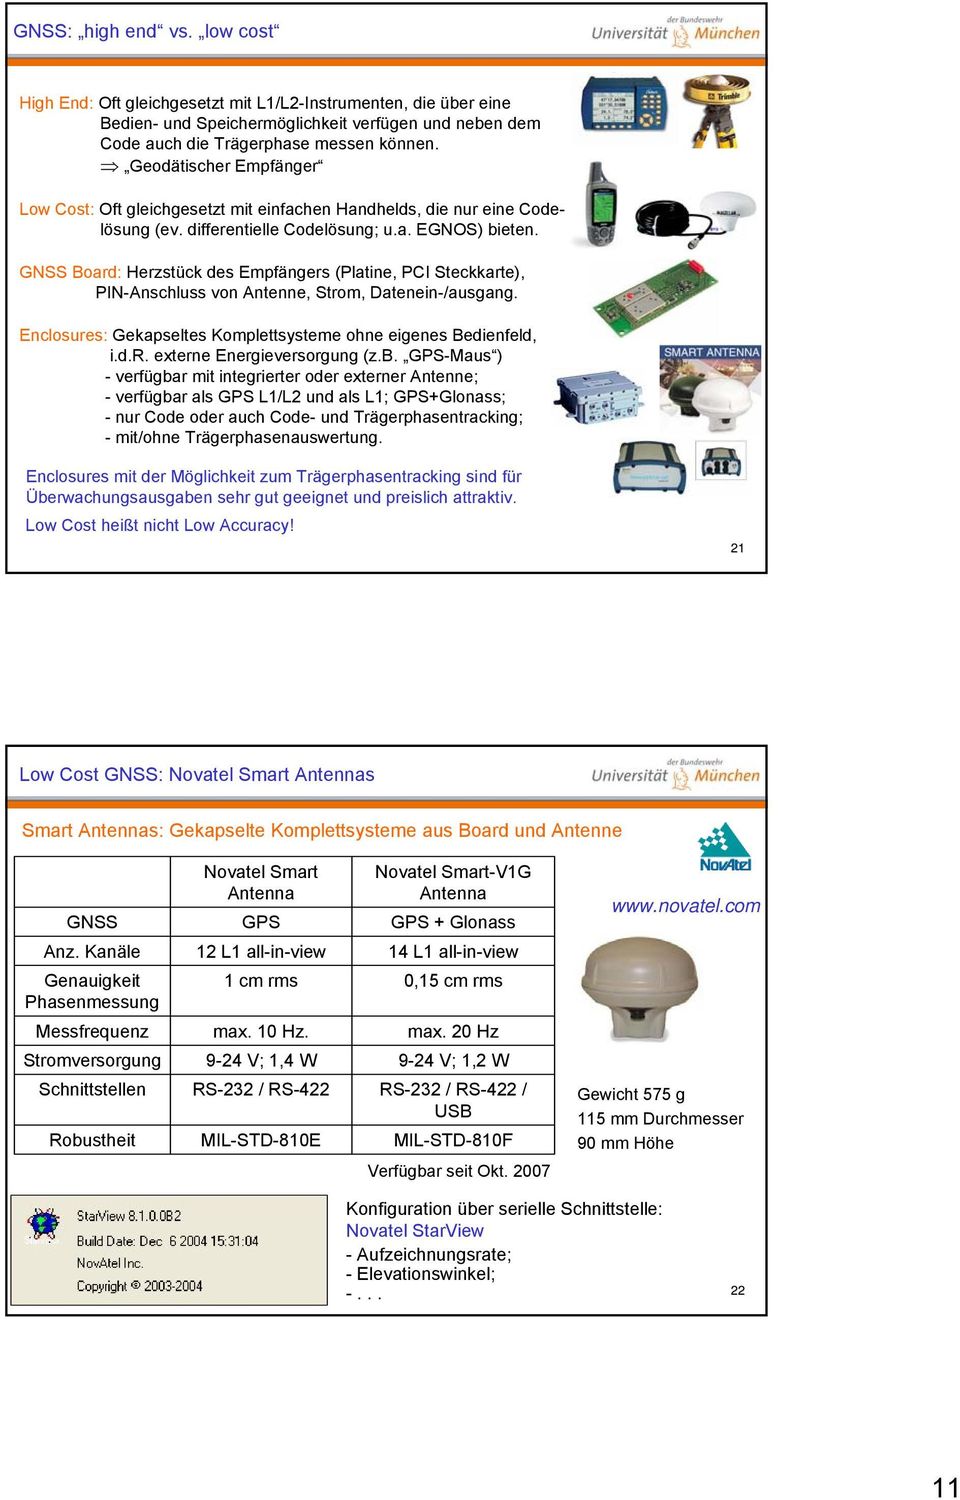 GNSS Board: Herzstück des Empfängers (Platine, PCI Steckkarte), PIN-Anschluss von Antenne, Strom, Datenein-/ausgang. Enclosures: Gekapseltes Komplettsysteme ohne eigenes Bedienfeld, i.d.r. externe Energieversorgung (z.